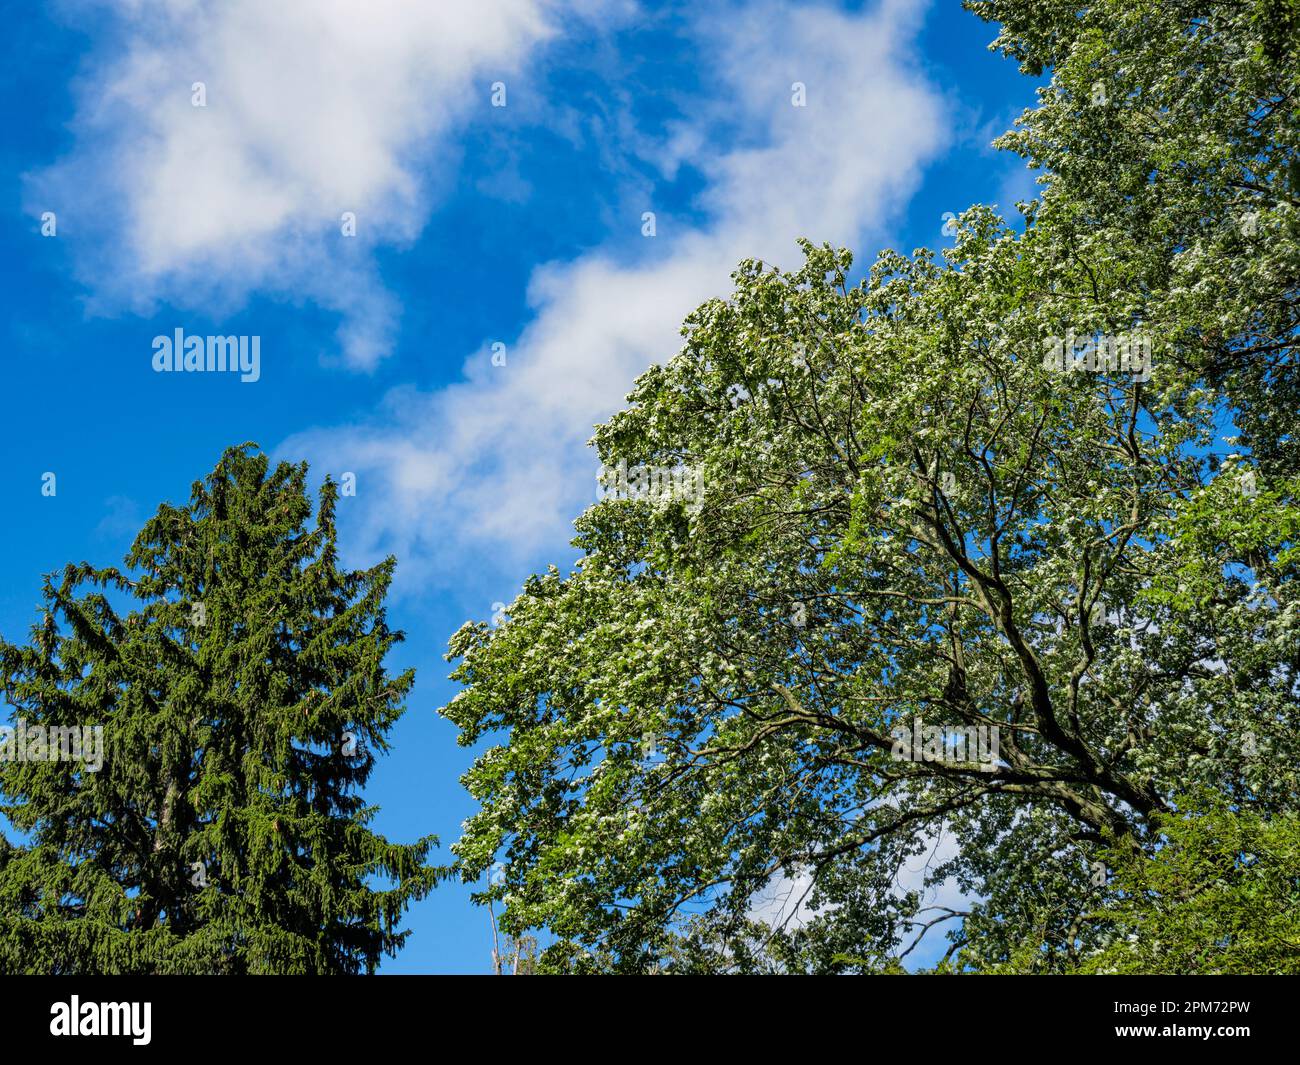 Épinette de Norvège, Picea abies et érable de Norvège, Acer platanoides L., contre un ciel bleu, fond naturel de force et de beauté. Banque D'Images